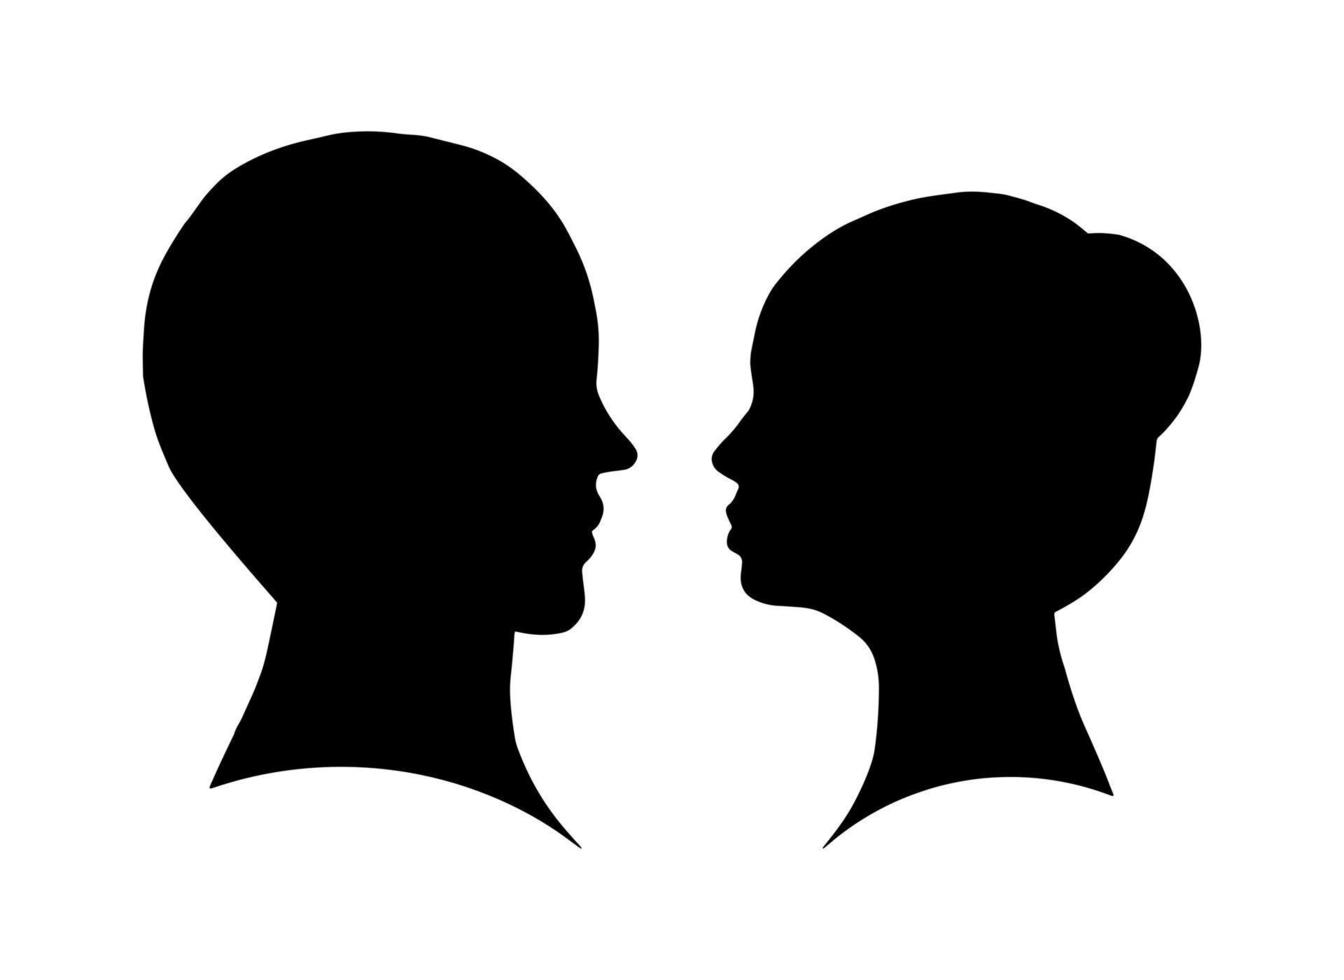 mulher plana e homem casal cabeça sombra forma isolada no fundo branco. ilustração em vetor simples amor conceito.